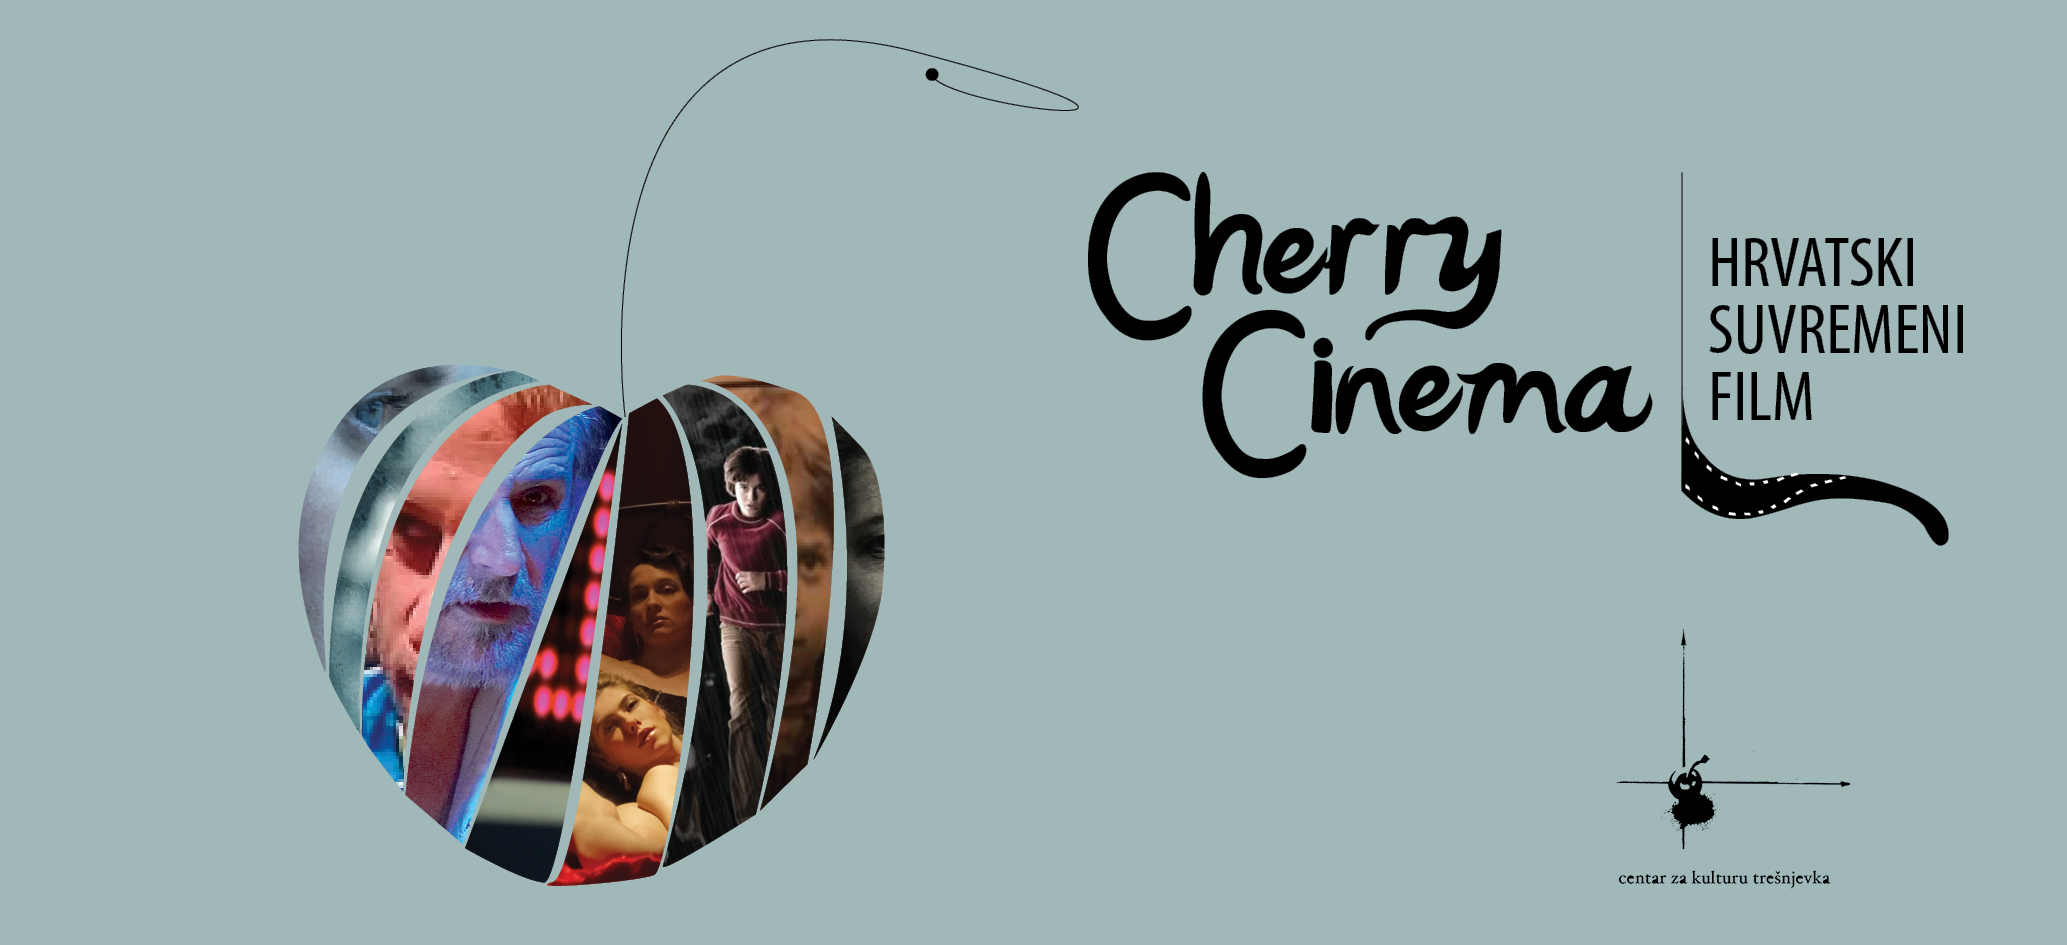 CHERRY CINEMA – Hrvatski suvremeni film 15., 16. i 17. 3.